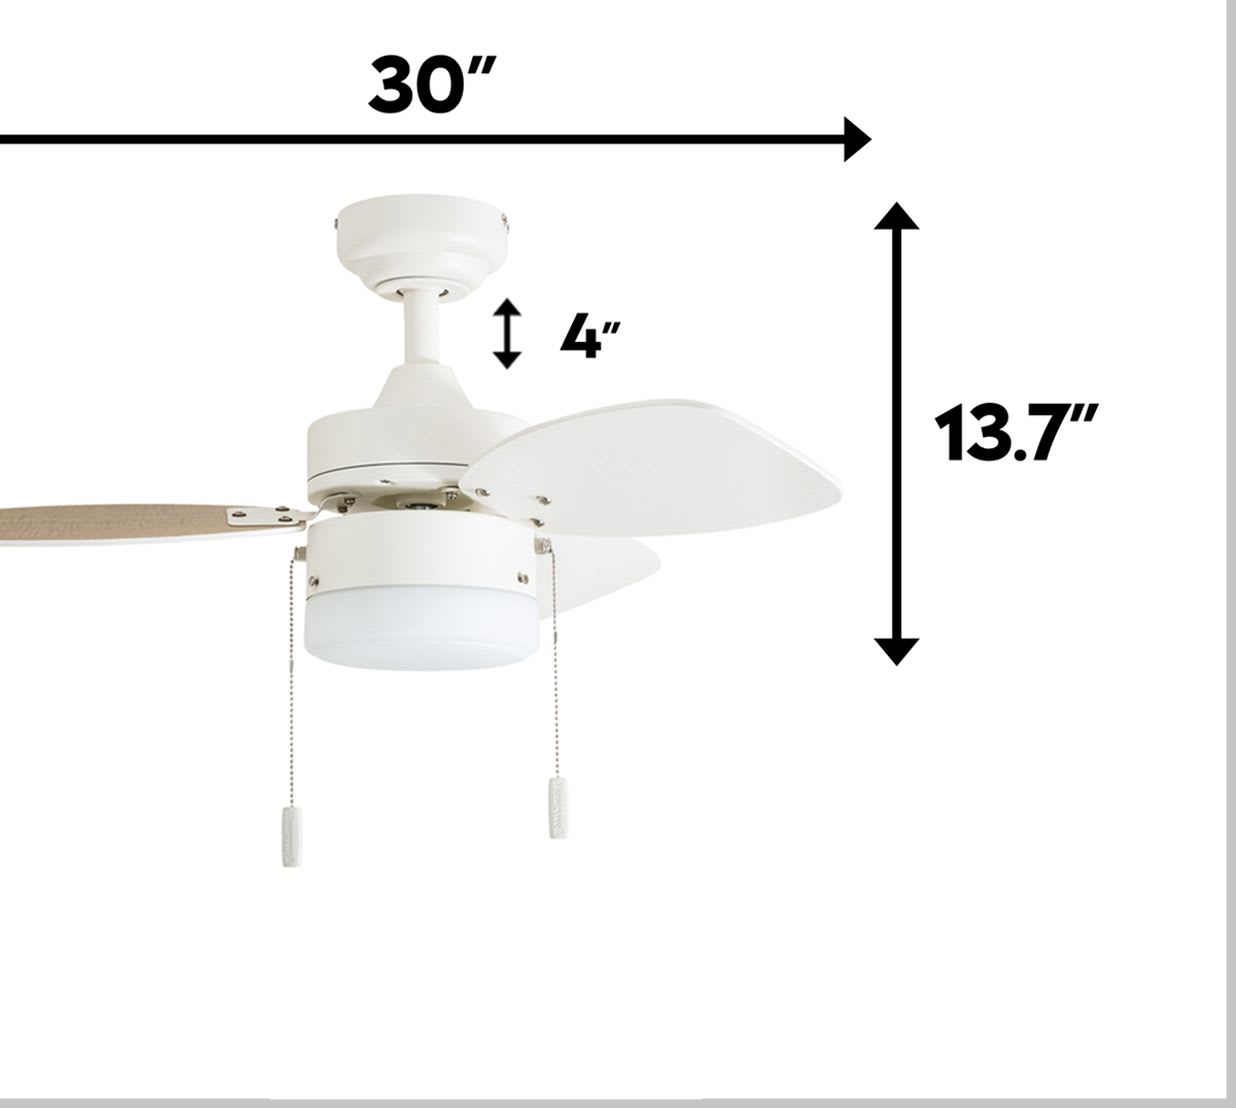 Honeywell Ocean Breeze Ceiling Fan, Brushed Nickel Finish, 30 Inch - 50601